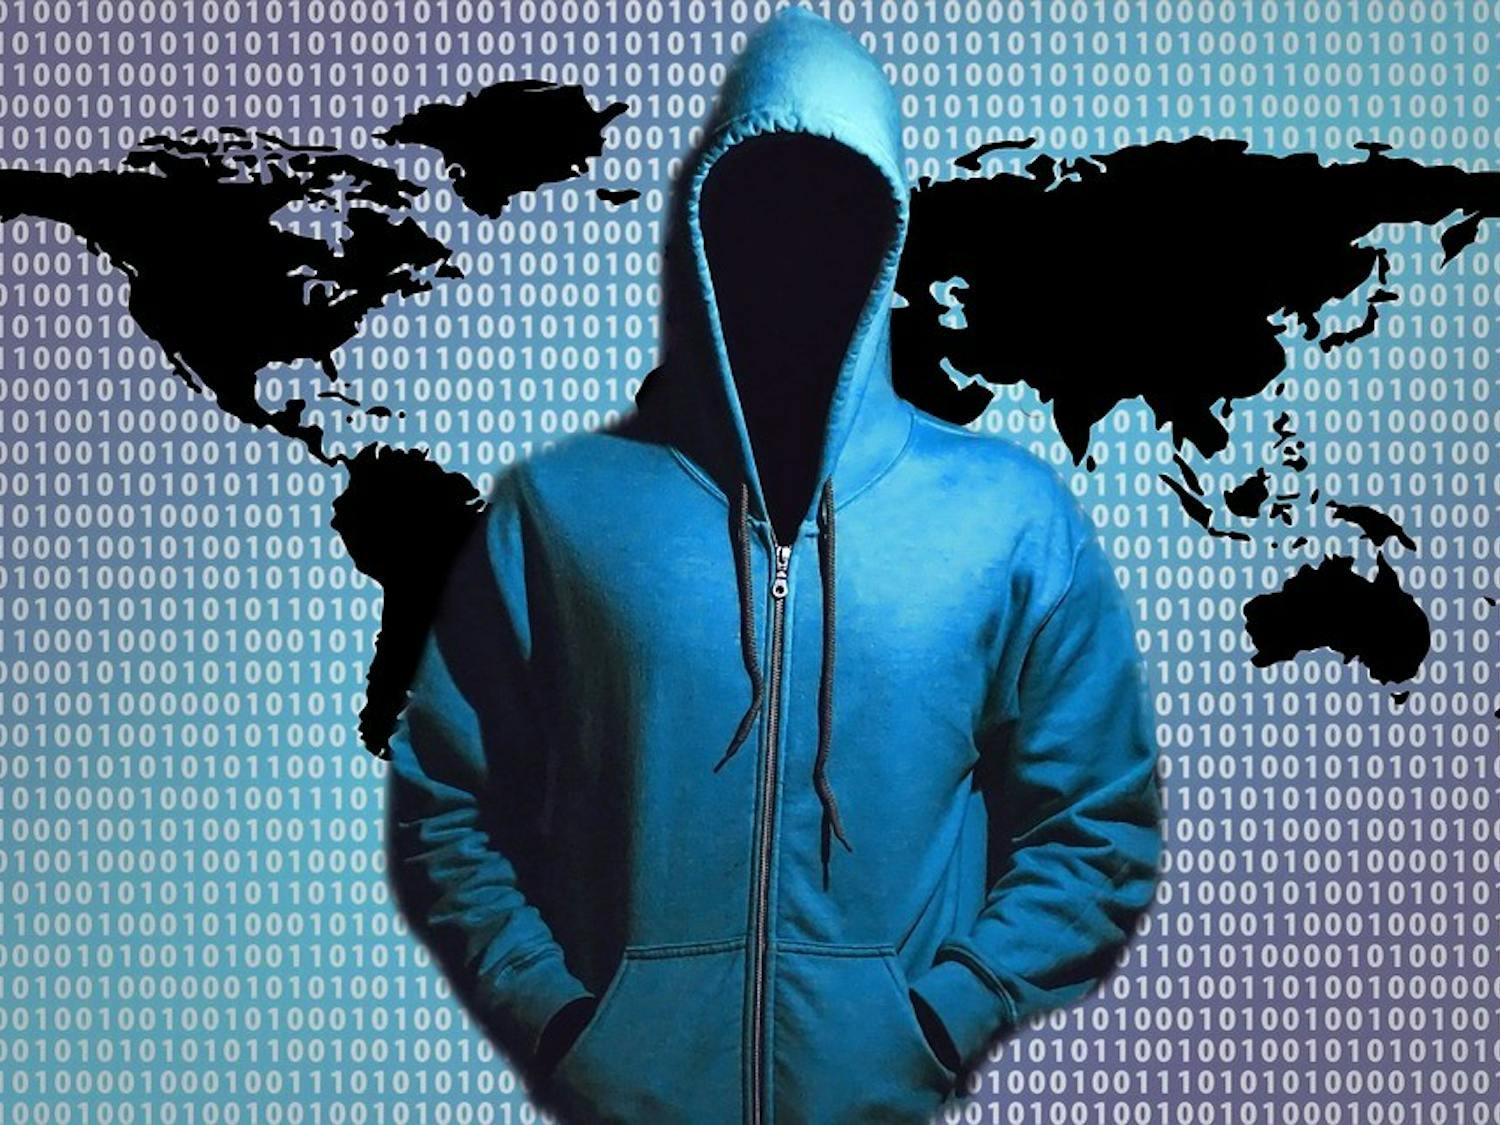 Internet Hacker - so spooky